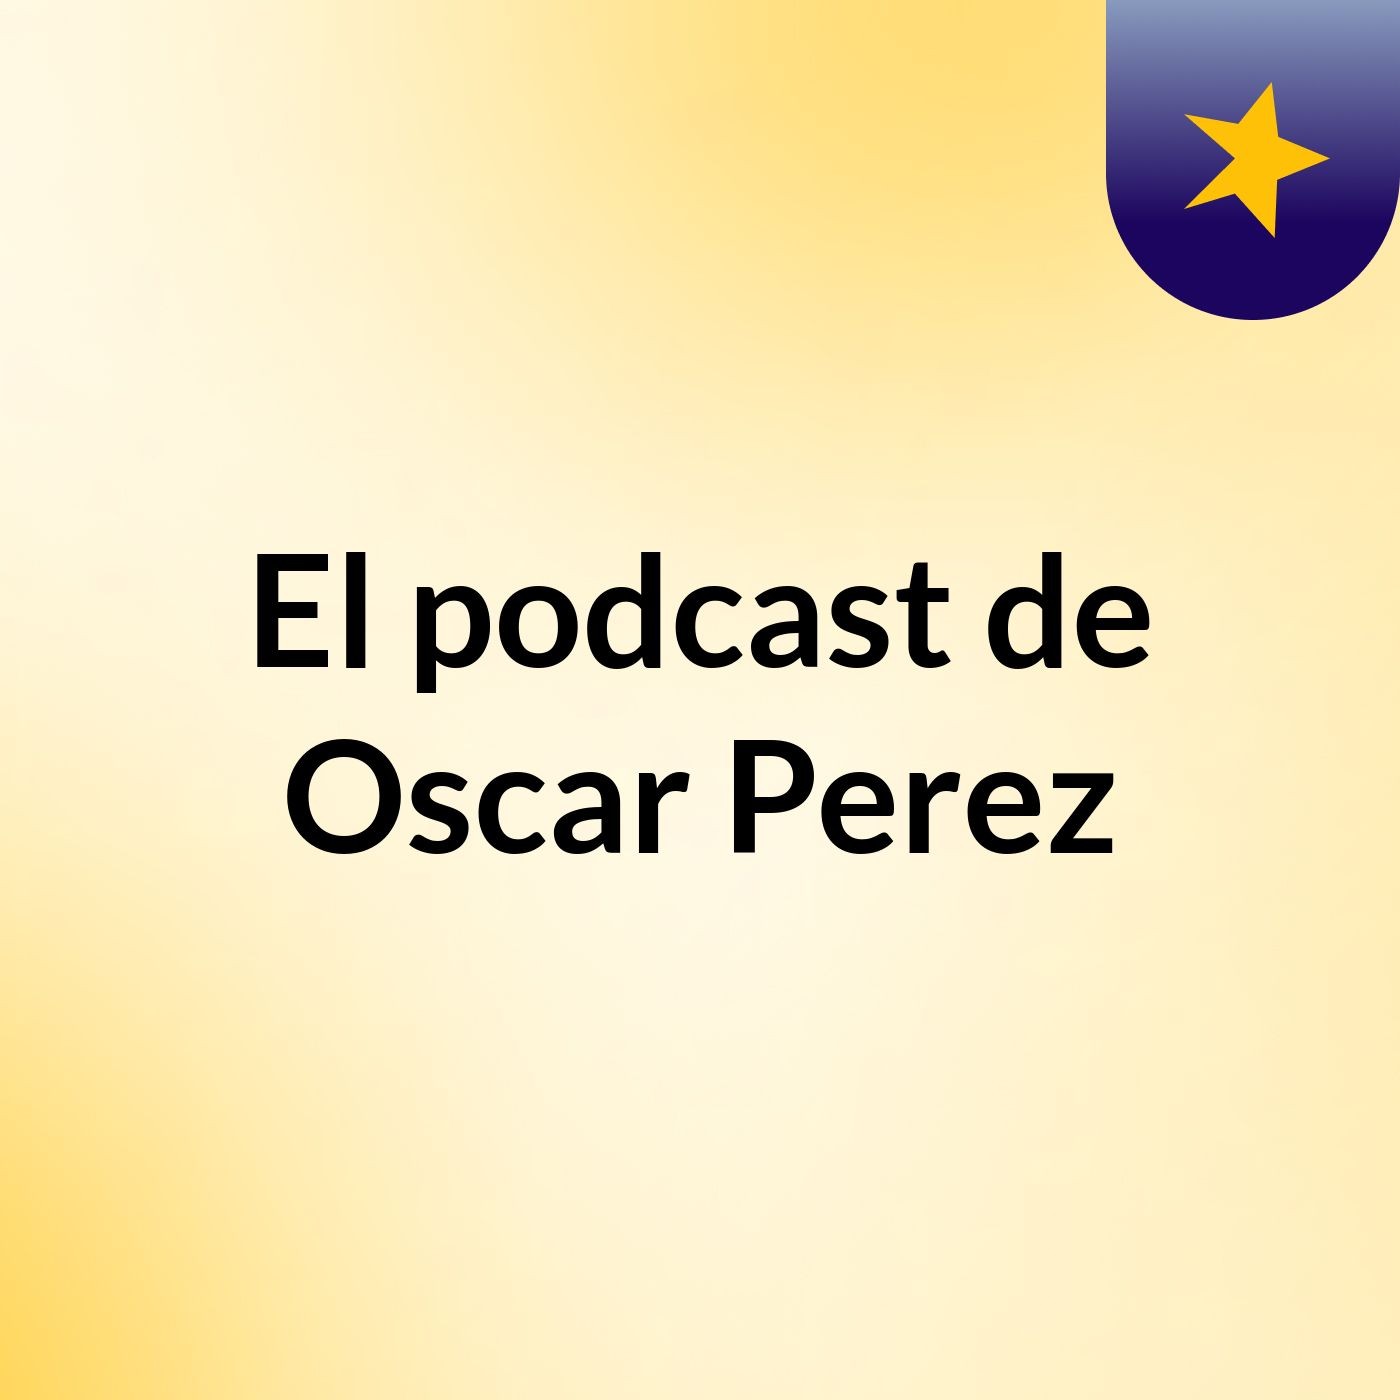 El podcast de Oscar Perez